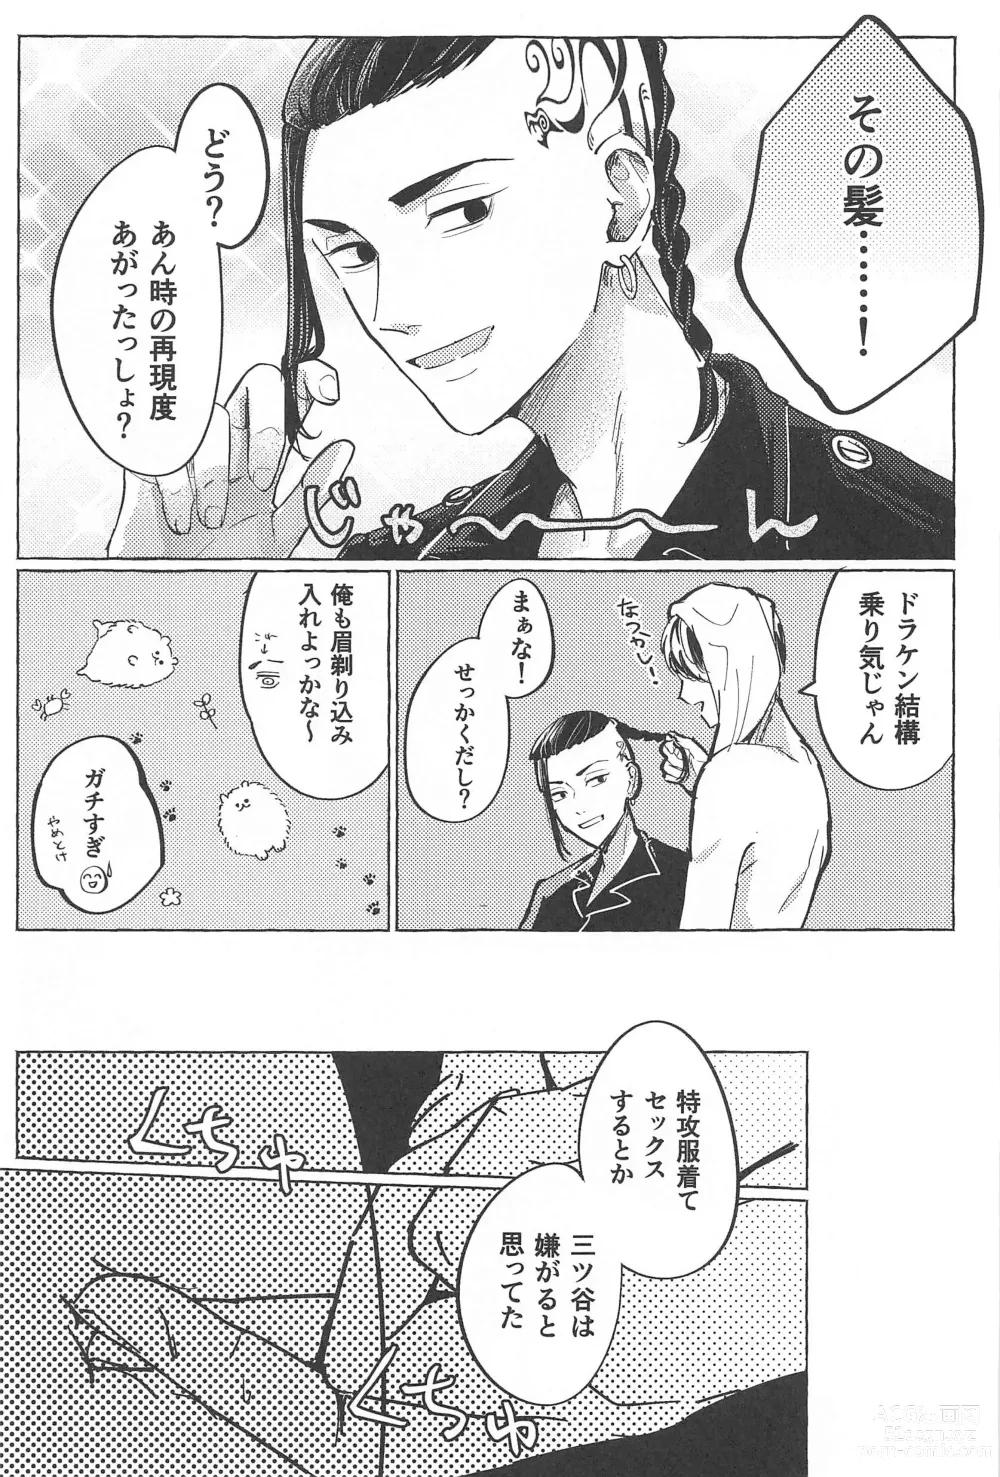 Page 8 of doujinshi 27-sai no Tokkoufuku